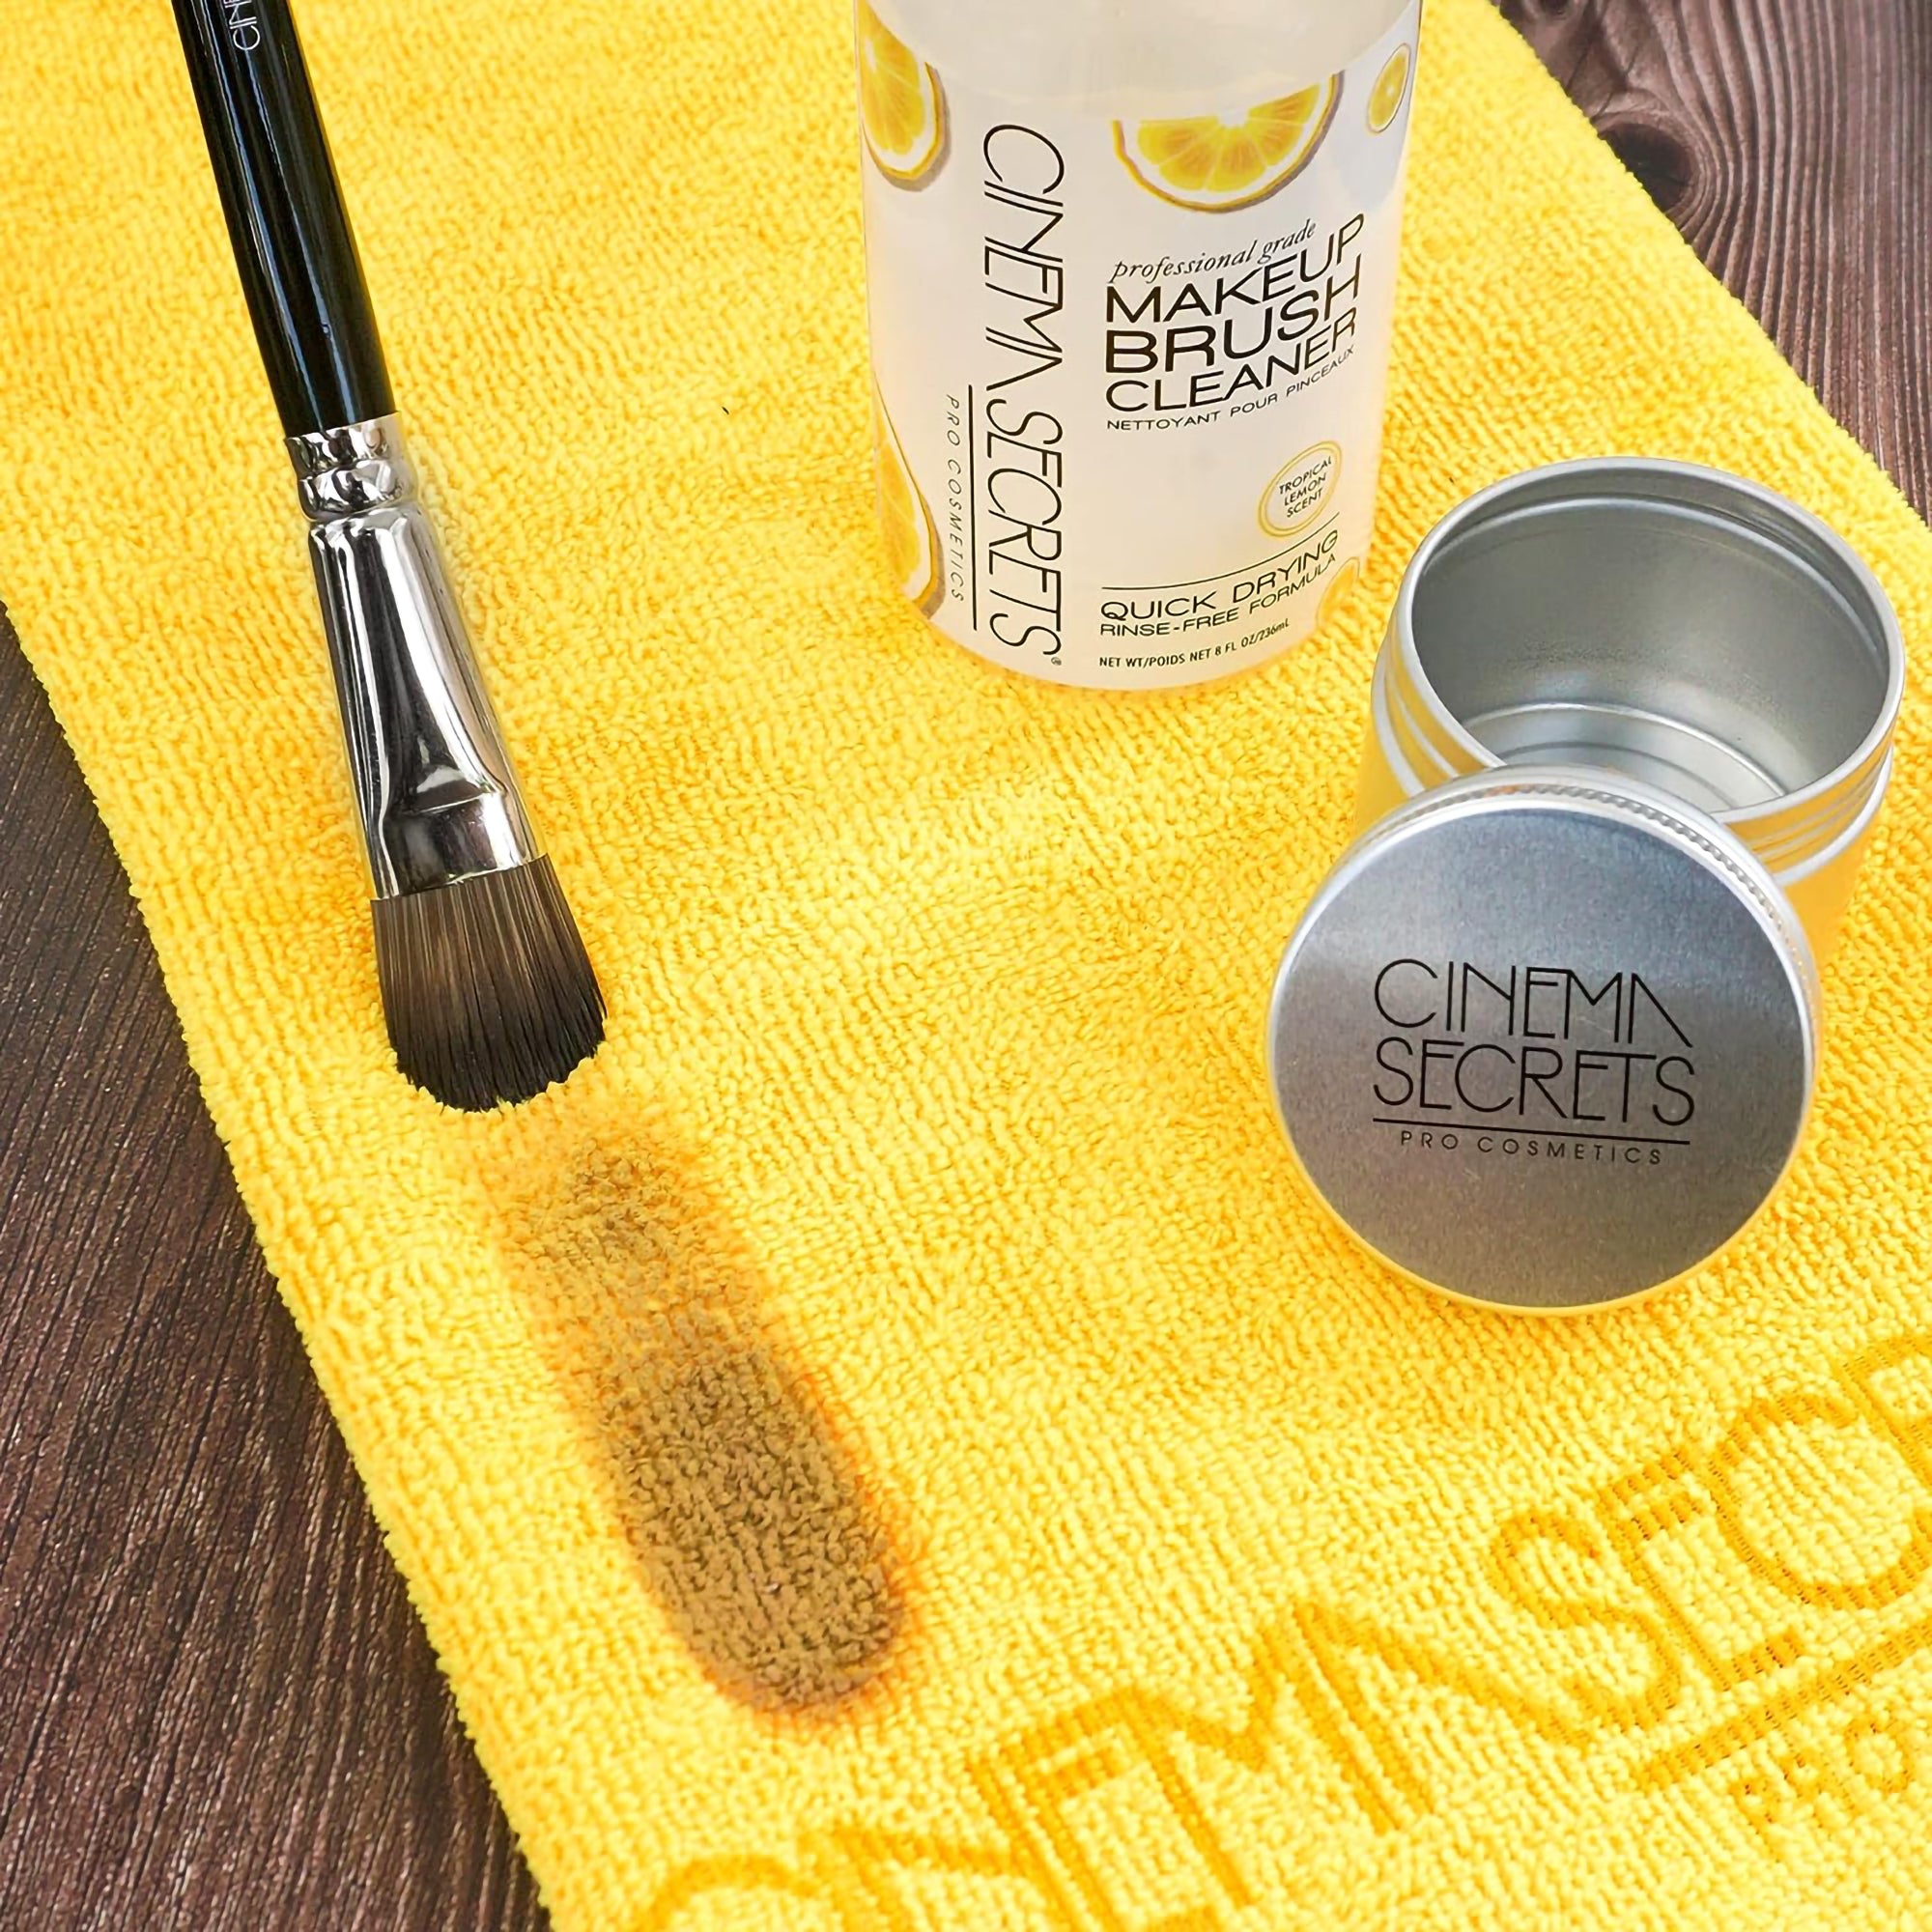 Makeup Brush Cleaner Pro Starter Kit - Cinema Secrets